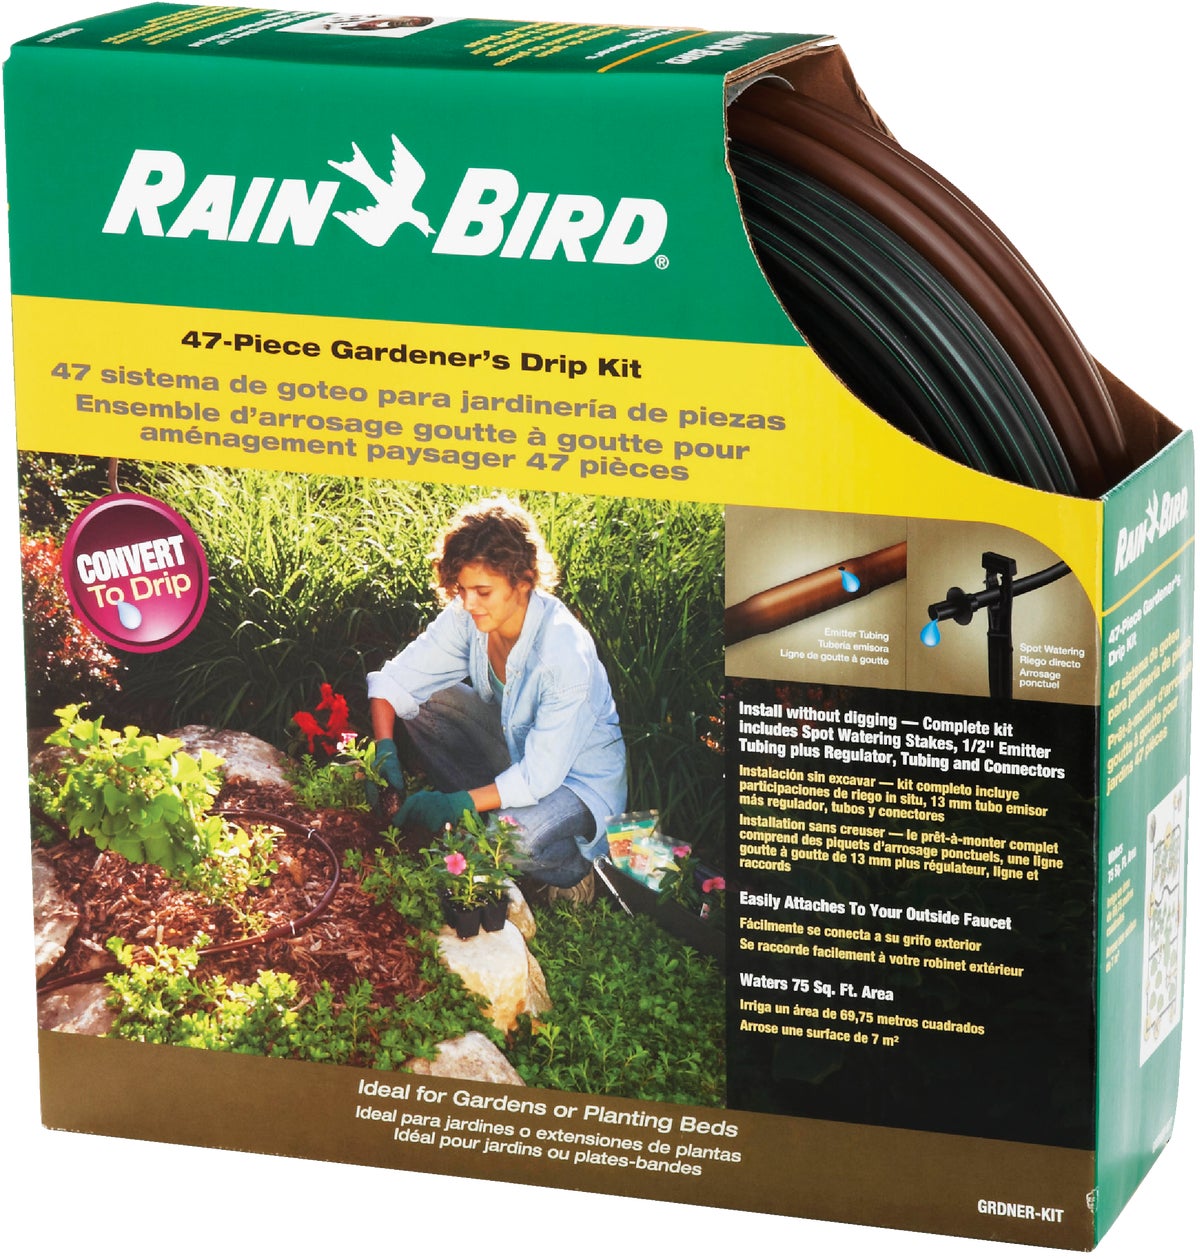 Rain Bird Gardener's Drip Kit GRDNER-KIT Irrigate Drip System 